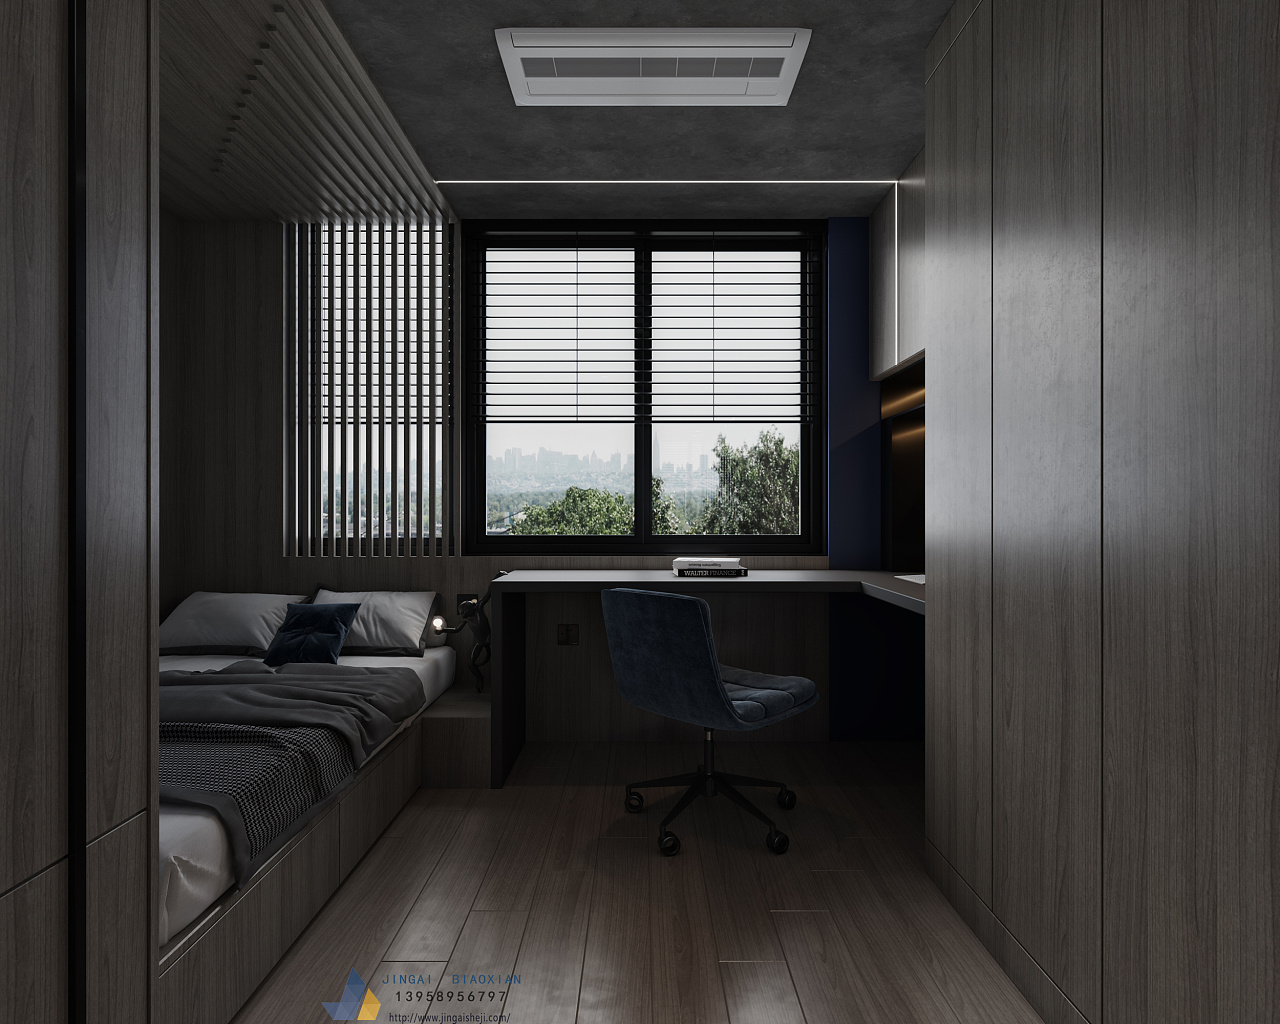 暗黑系客餐厅卧室 - 效果图交流区-建E室内设计网